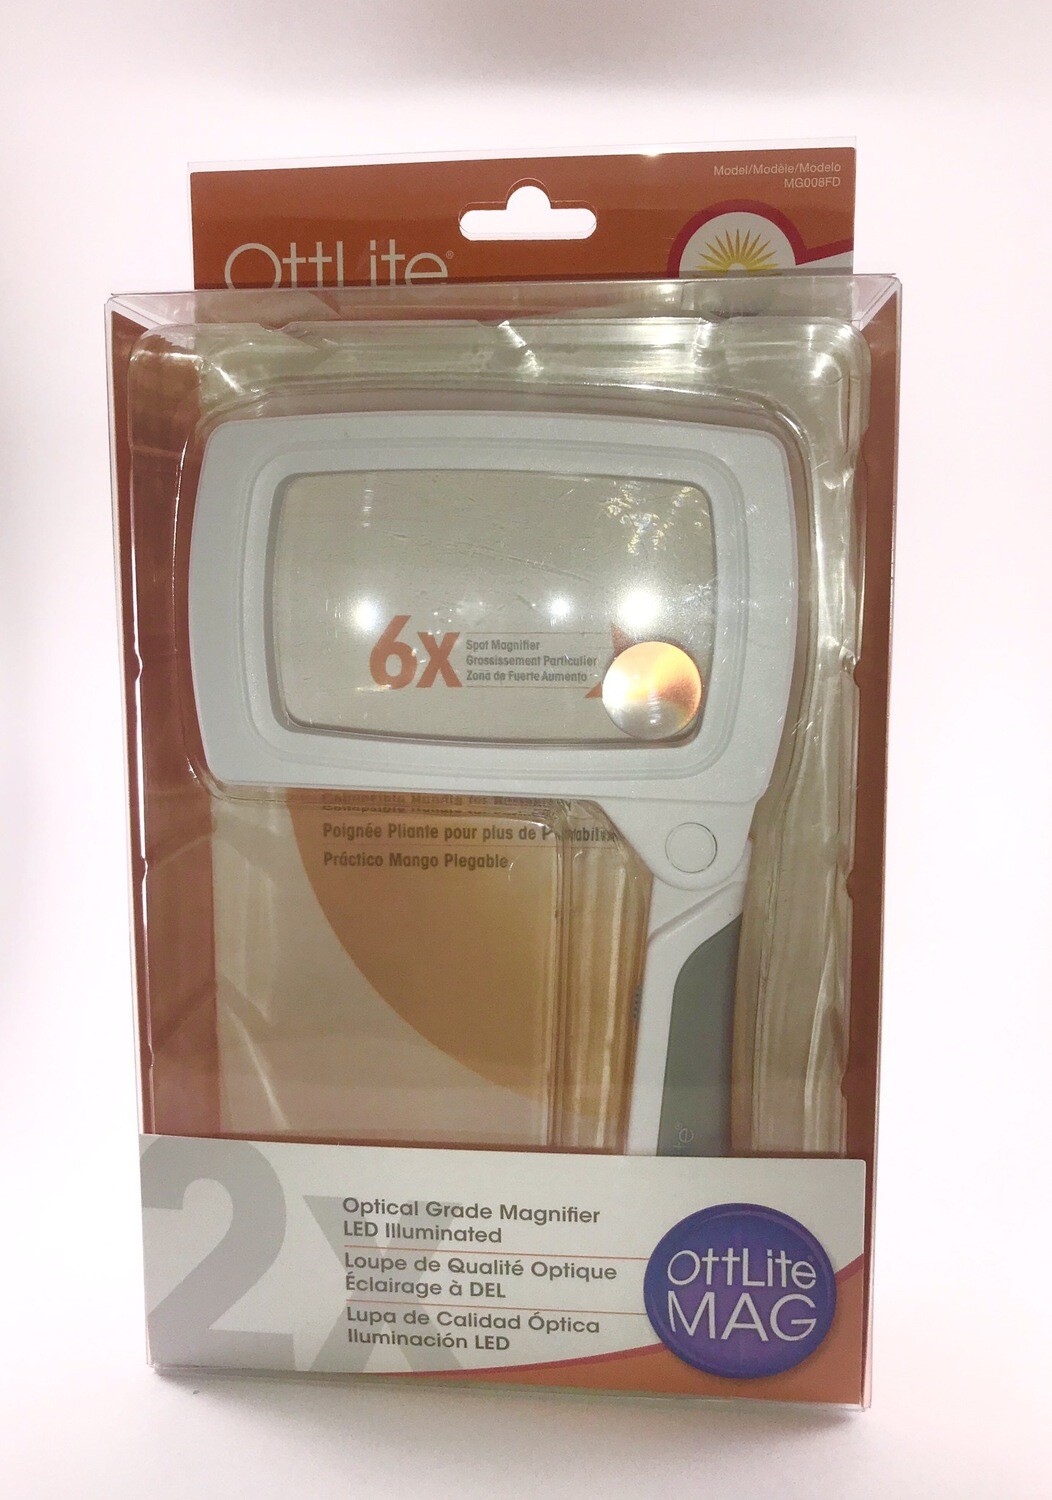 OttLite 2x Folding LED Magnifier